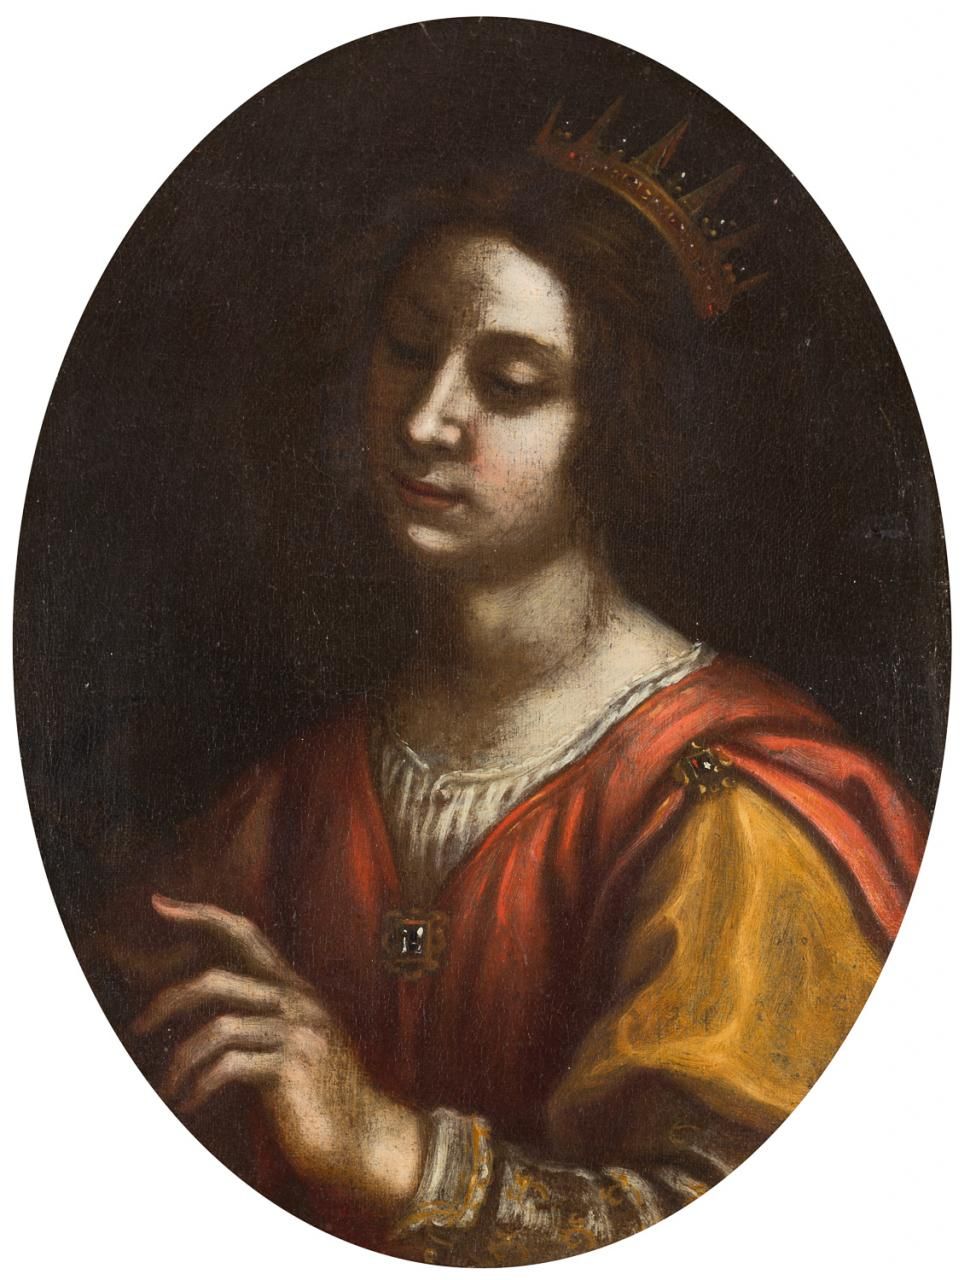 ESCUELA ESPAÑOLA S. XVII Santa Caterina d'Alessandria
Olio su tela
54 x 41 cm